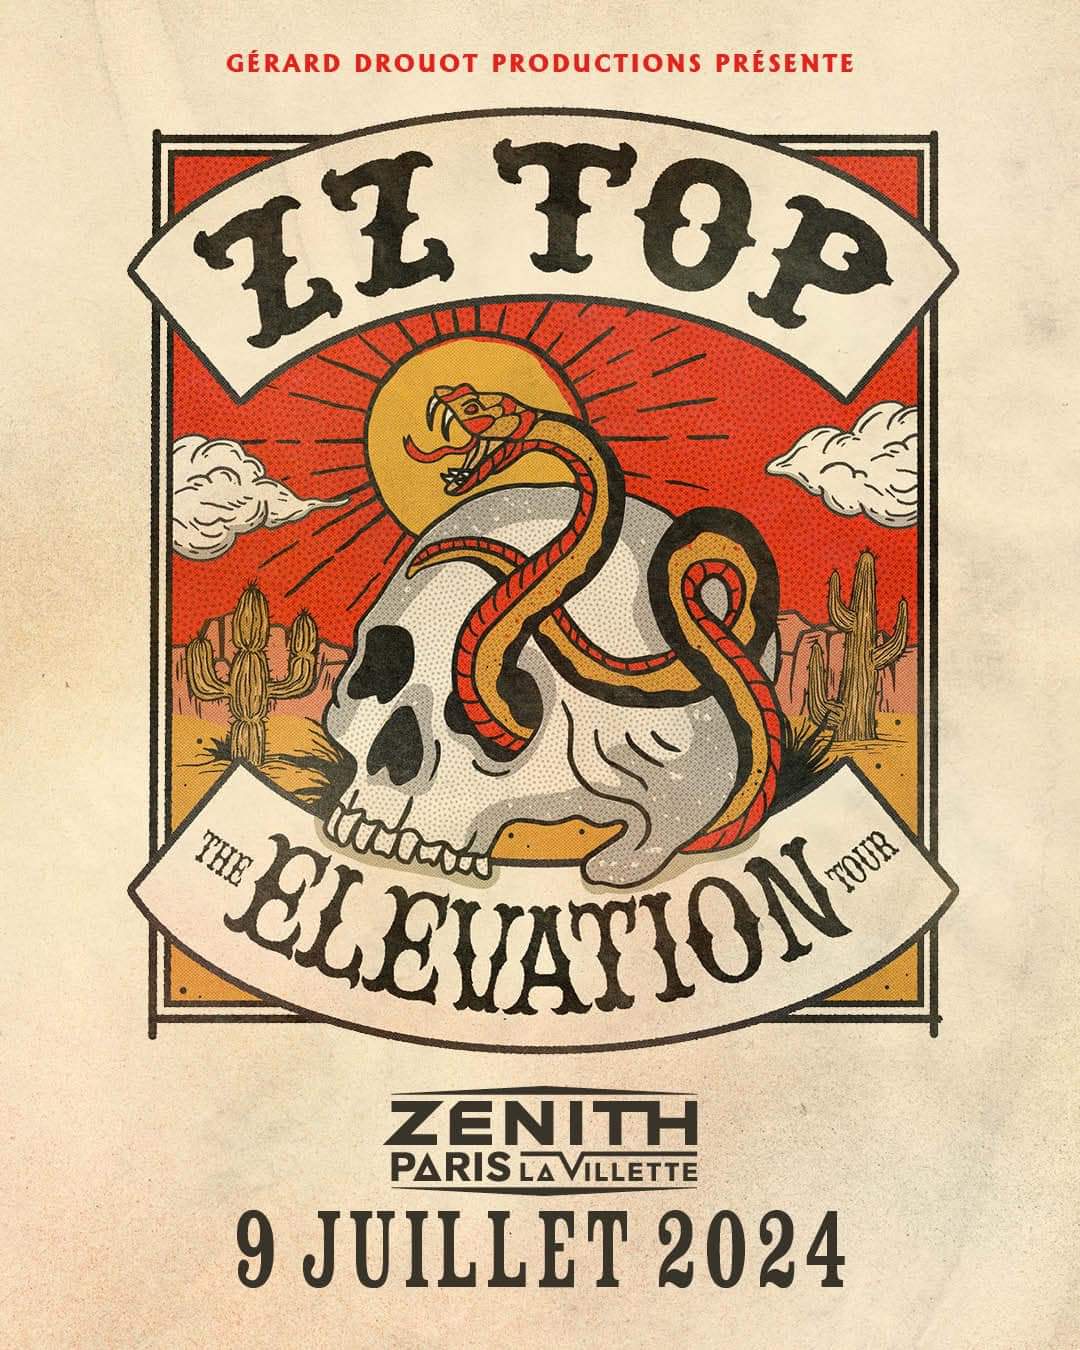 ZZ Top at Zenith Paris Tickets